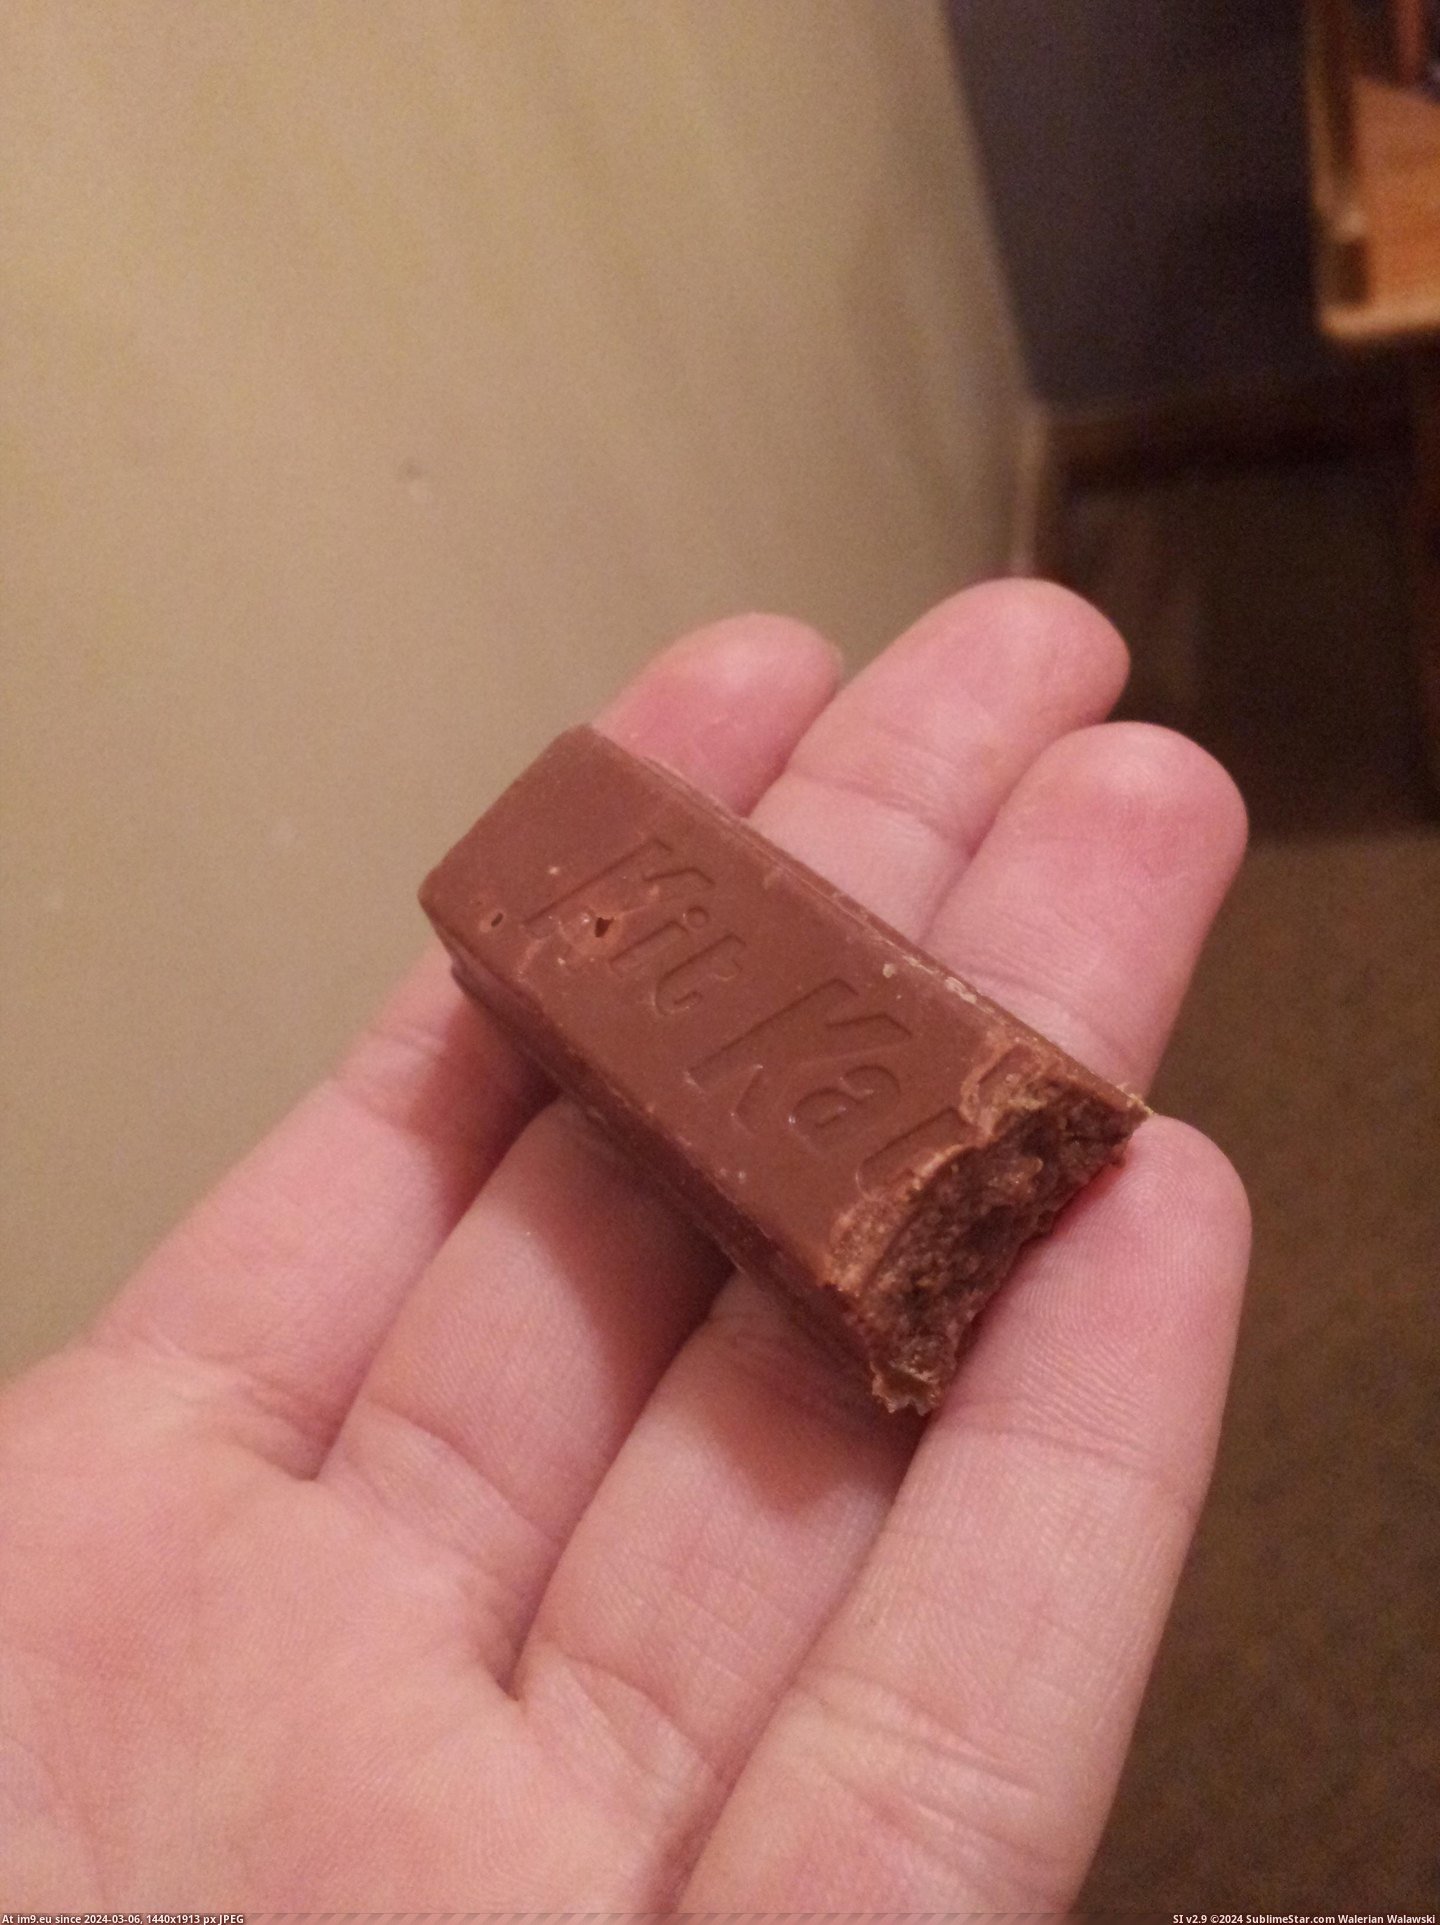 #Was #All #Kit #Chocolate #Kat [Mildlyinteresting] My Kit-Kat was all chocolate :( Pic. (Bild von album My r/MILDLYINTERESTING favs))